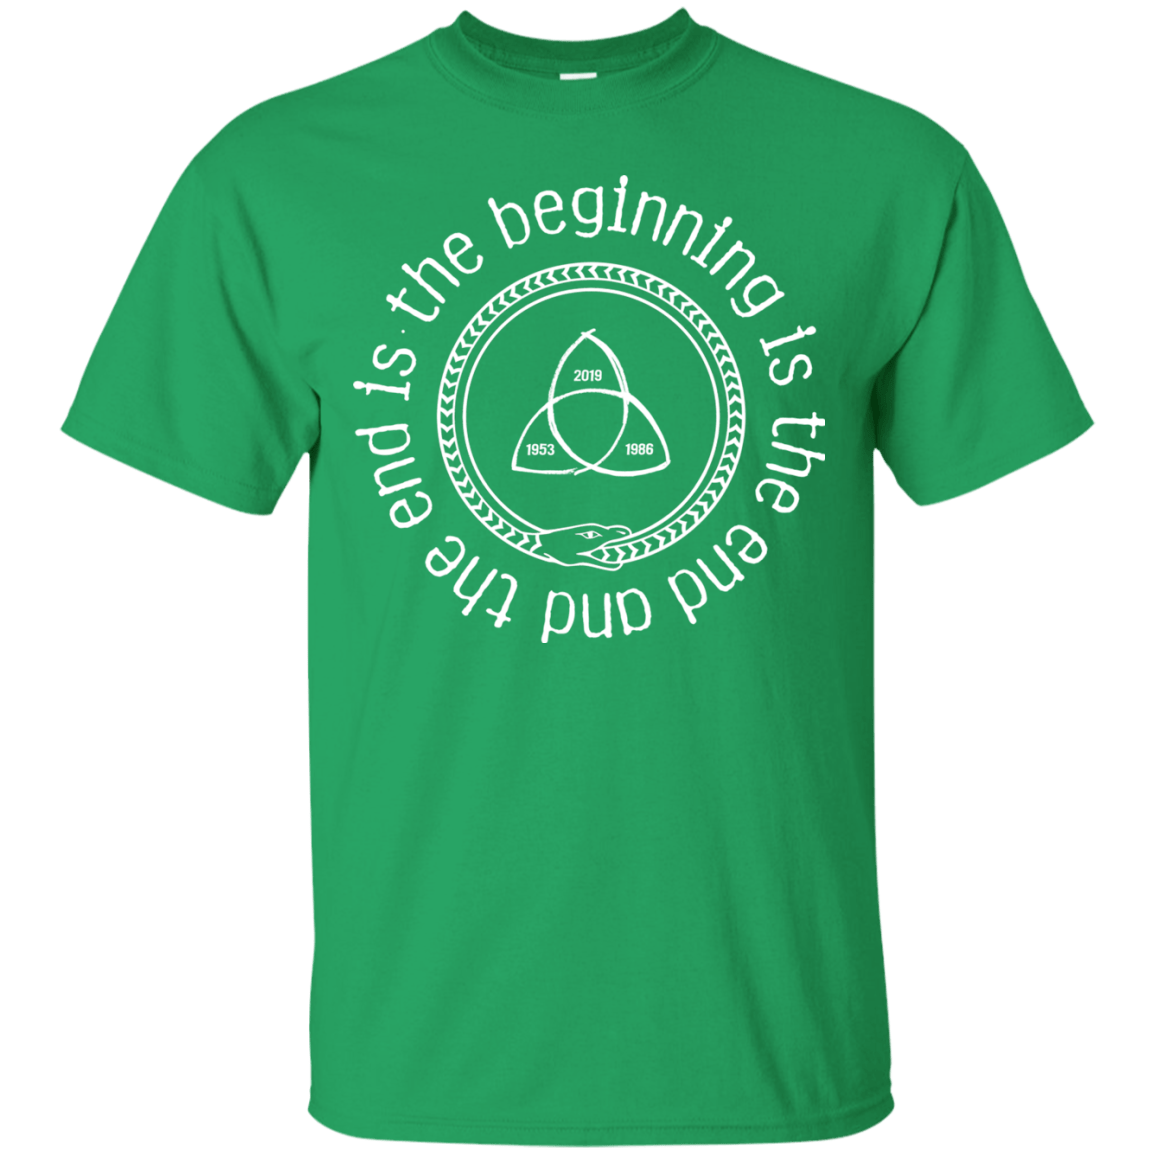 T-Shirts Irish Green / Small Snake T-Shirt